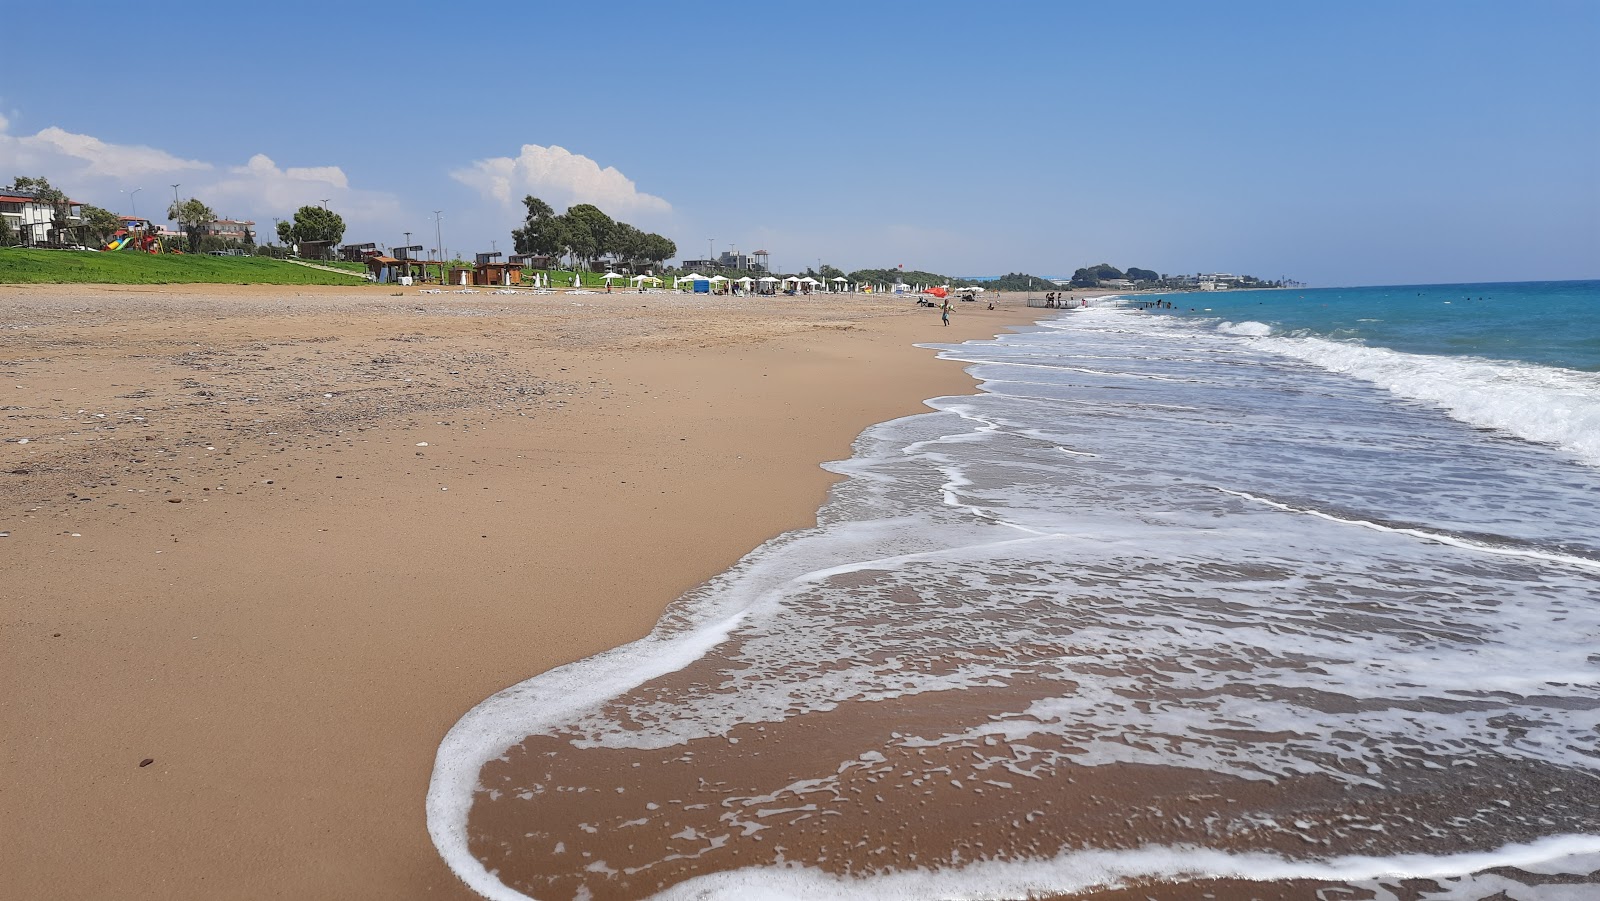 Zdjęcie Kizilot Public beach z powierzchnią brązowy piasek